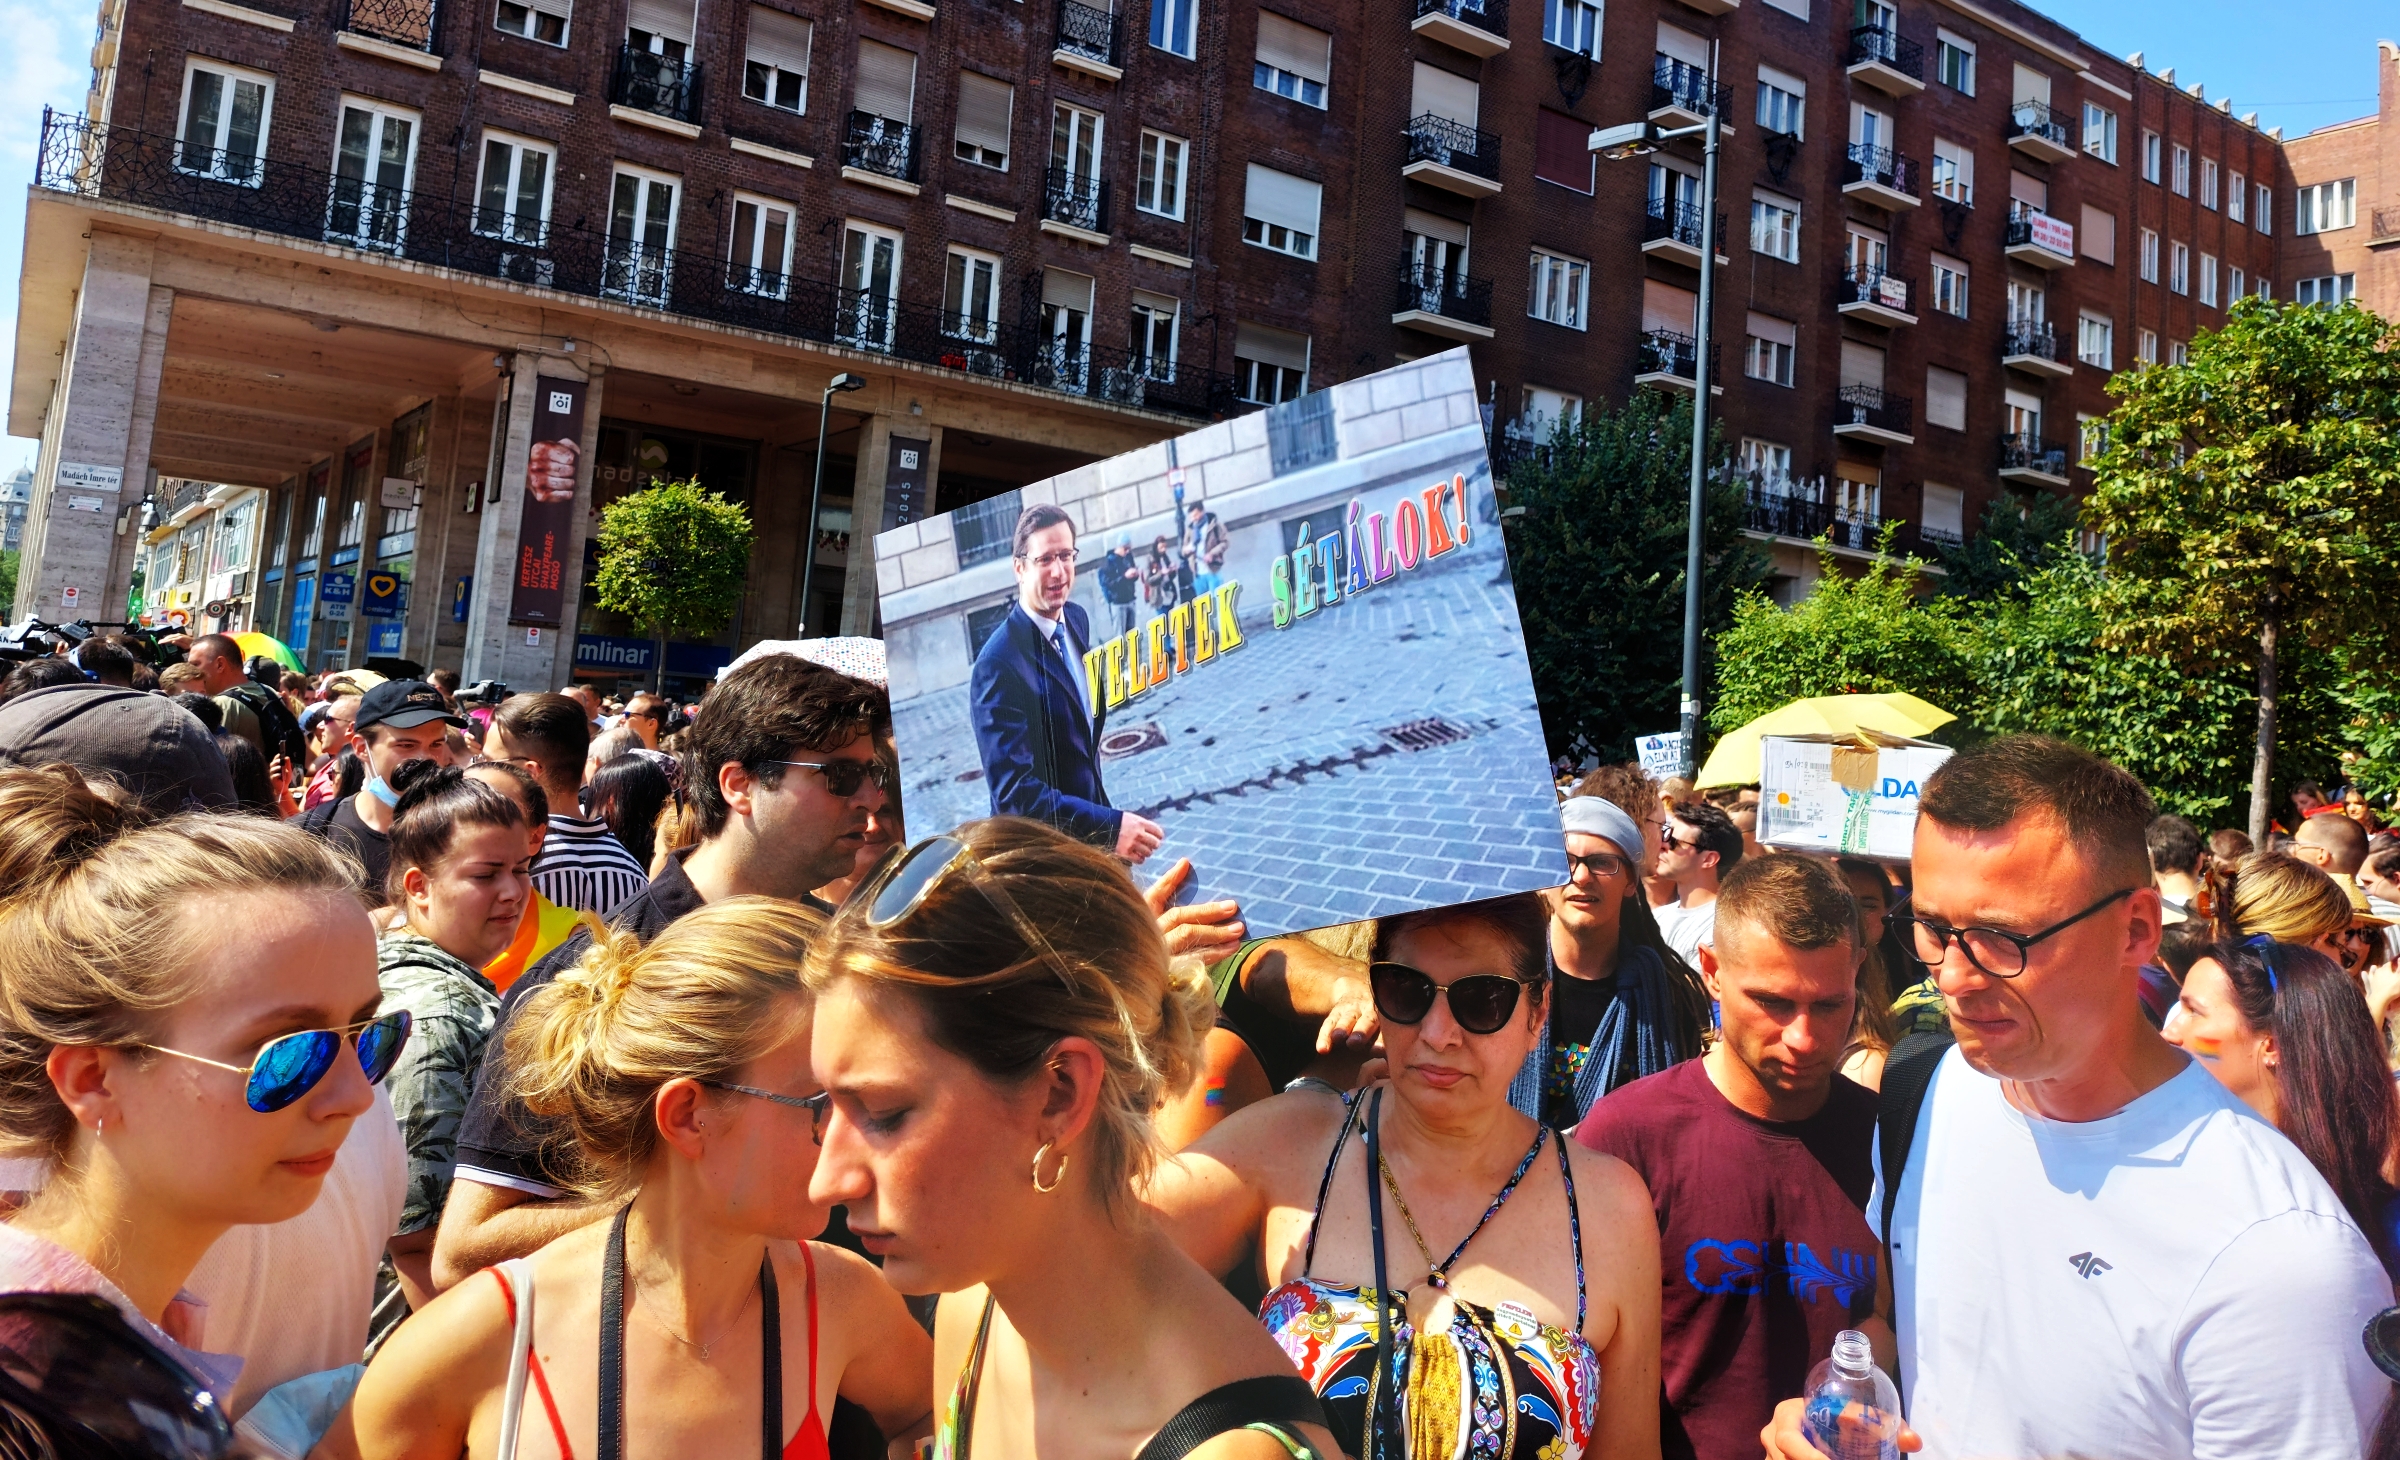 Noha a fideszes Gulyás Gergely kancelláriaminiszter szerint pártjának és kormányának nincs közös metszete a Pride-on vonulóknak, ők várják oda őt is.